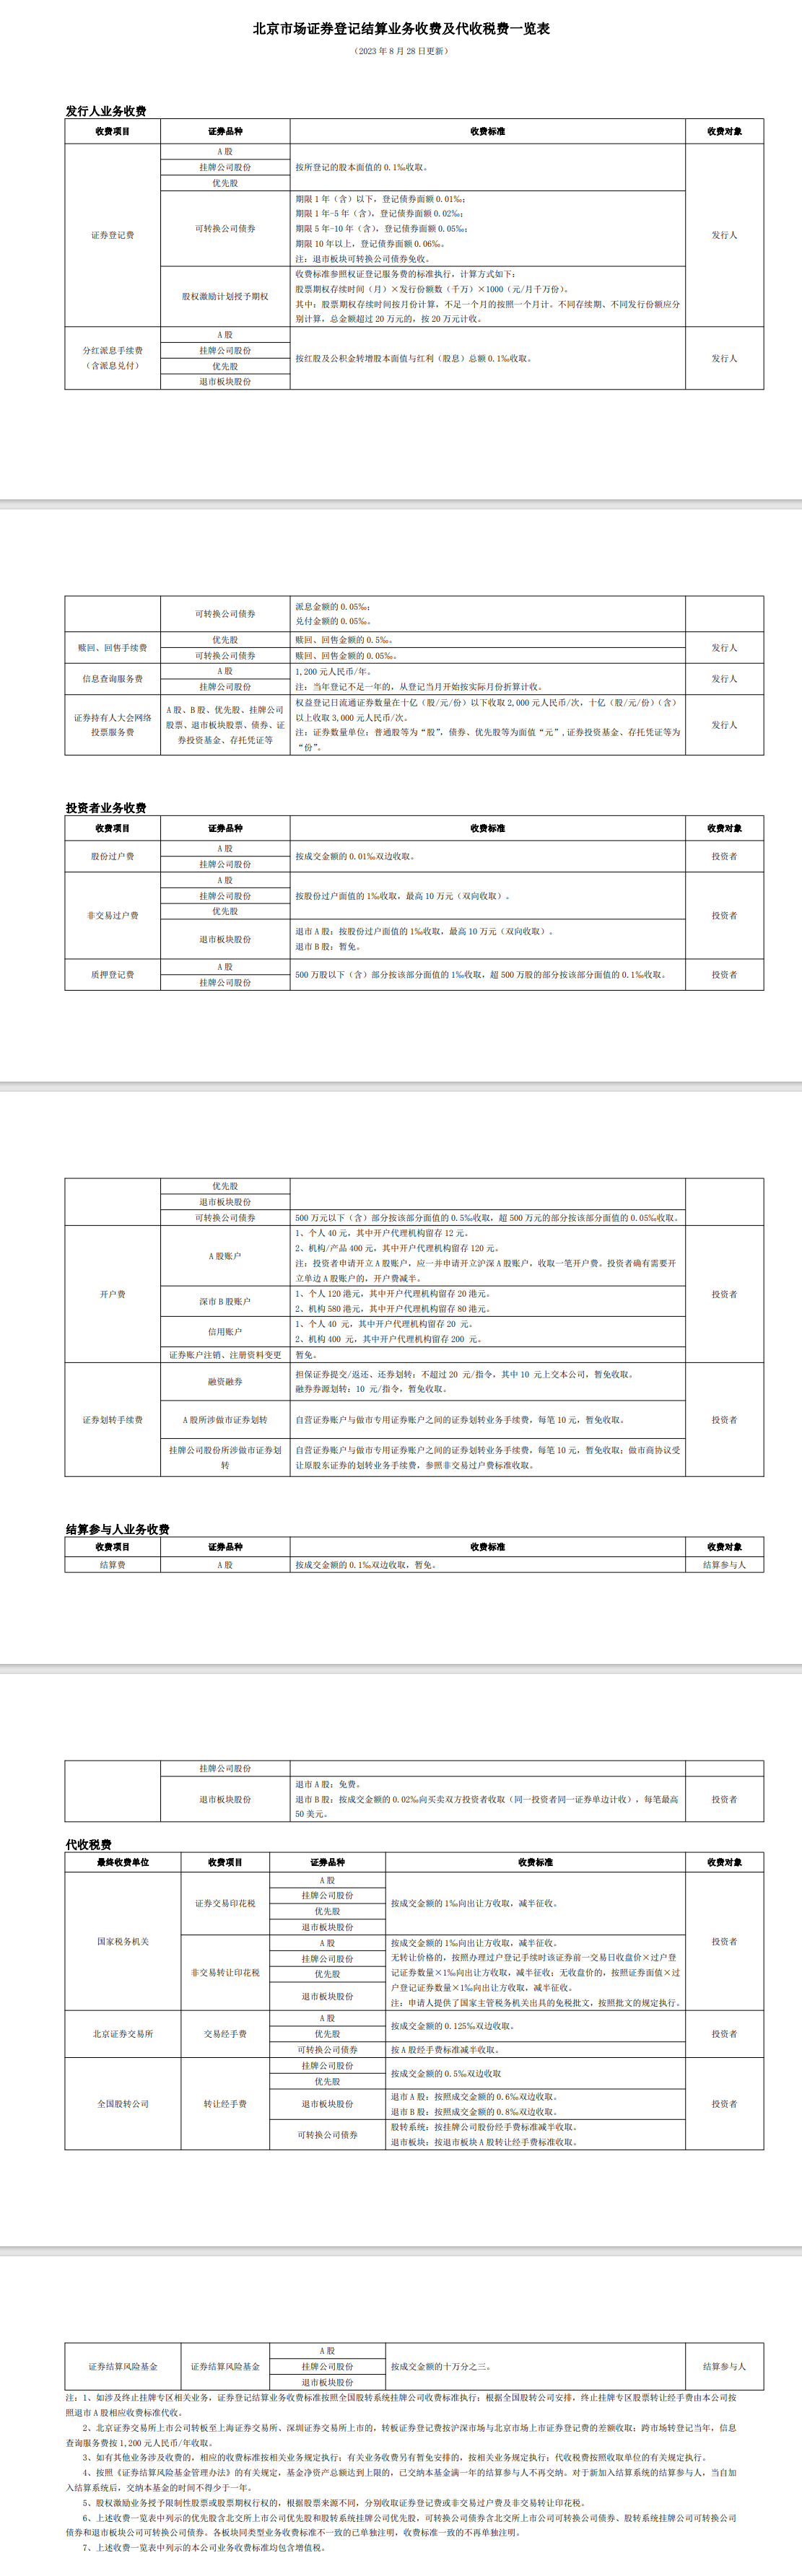 北京市场证券登记结算业务收费及代收税费一览表.png